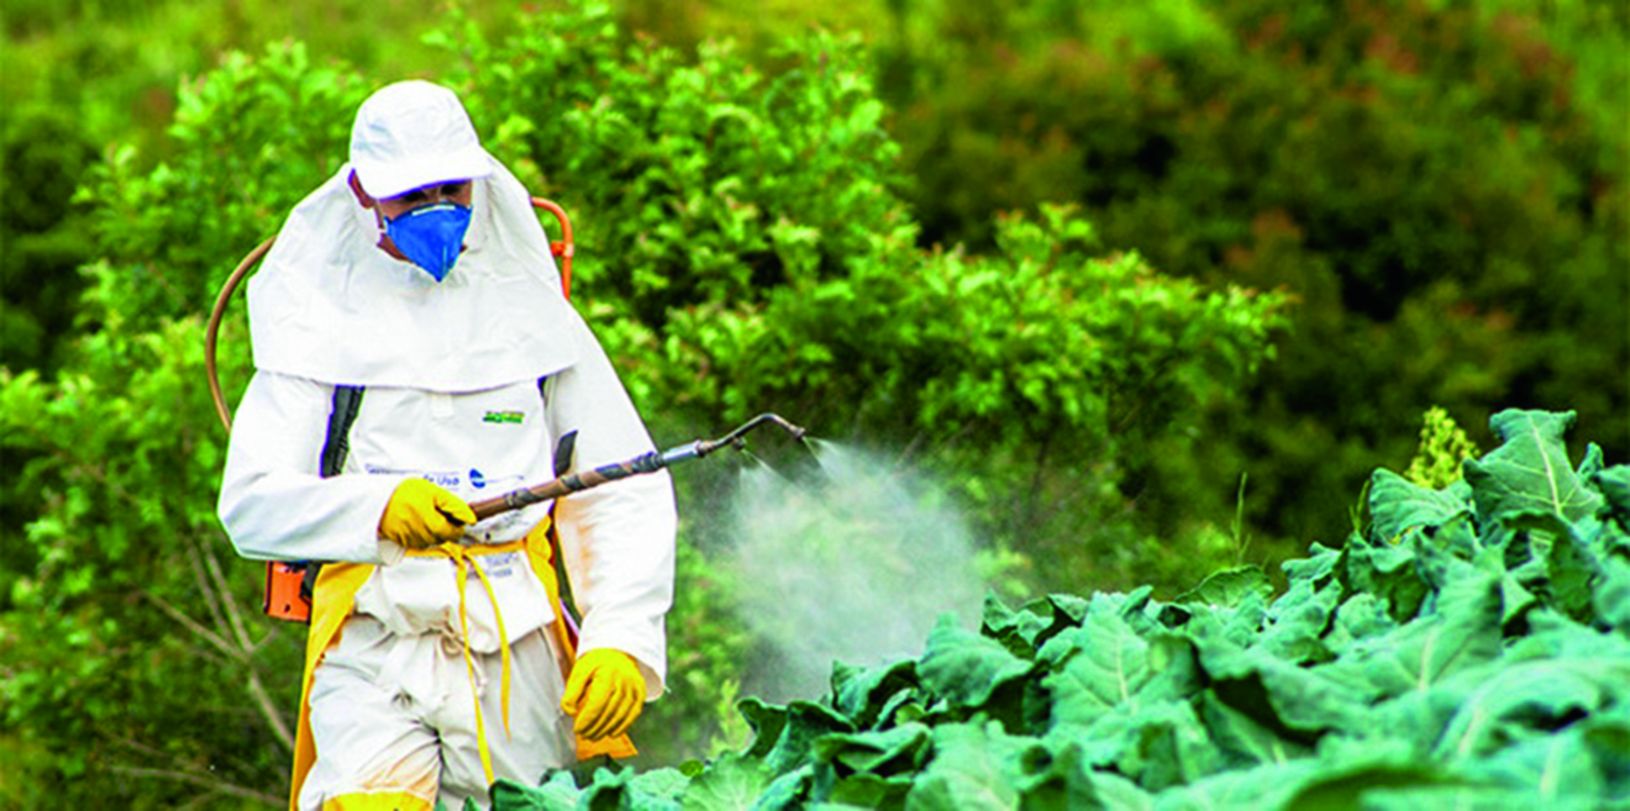 izobrazba za sigurno rukovanje i pravilnu primjenu pesticida